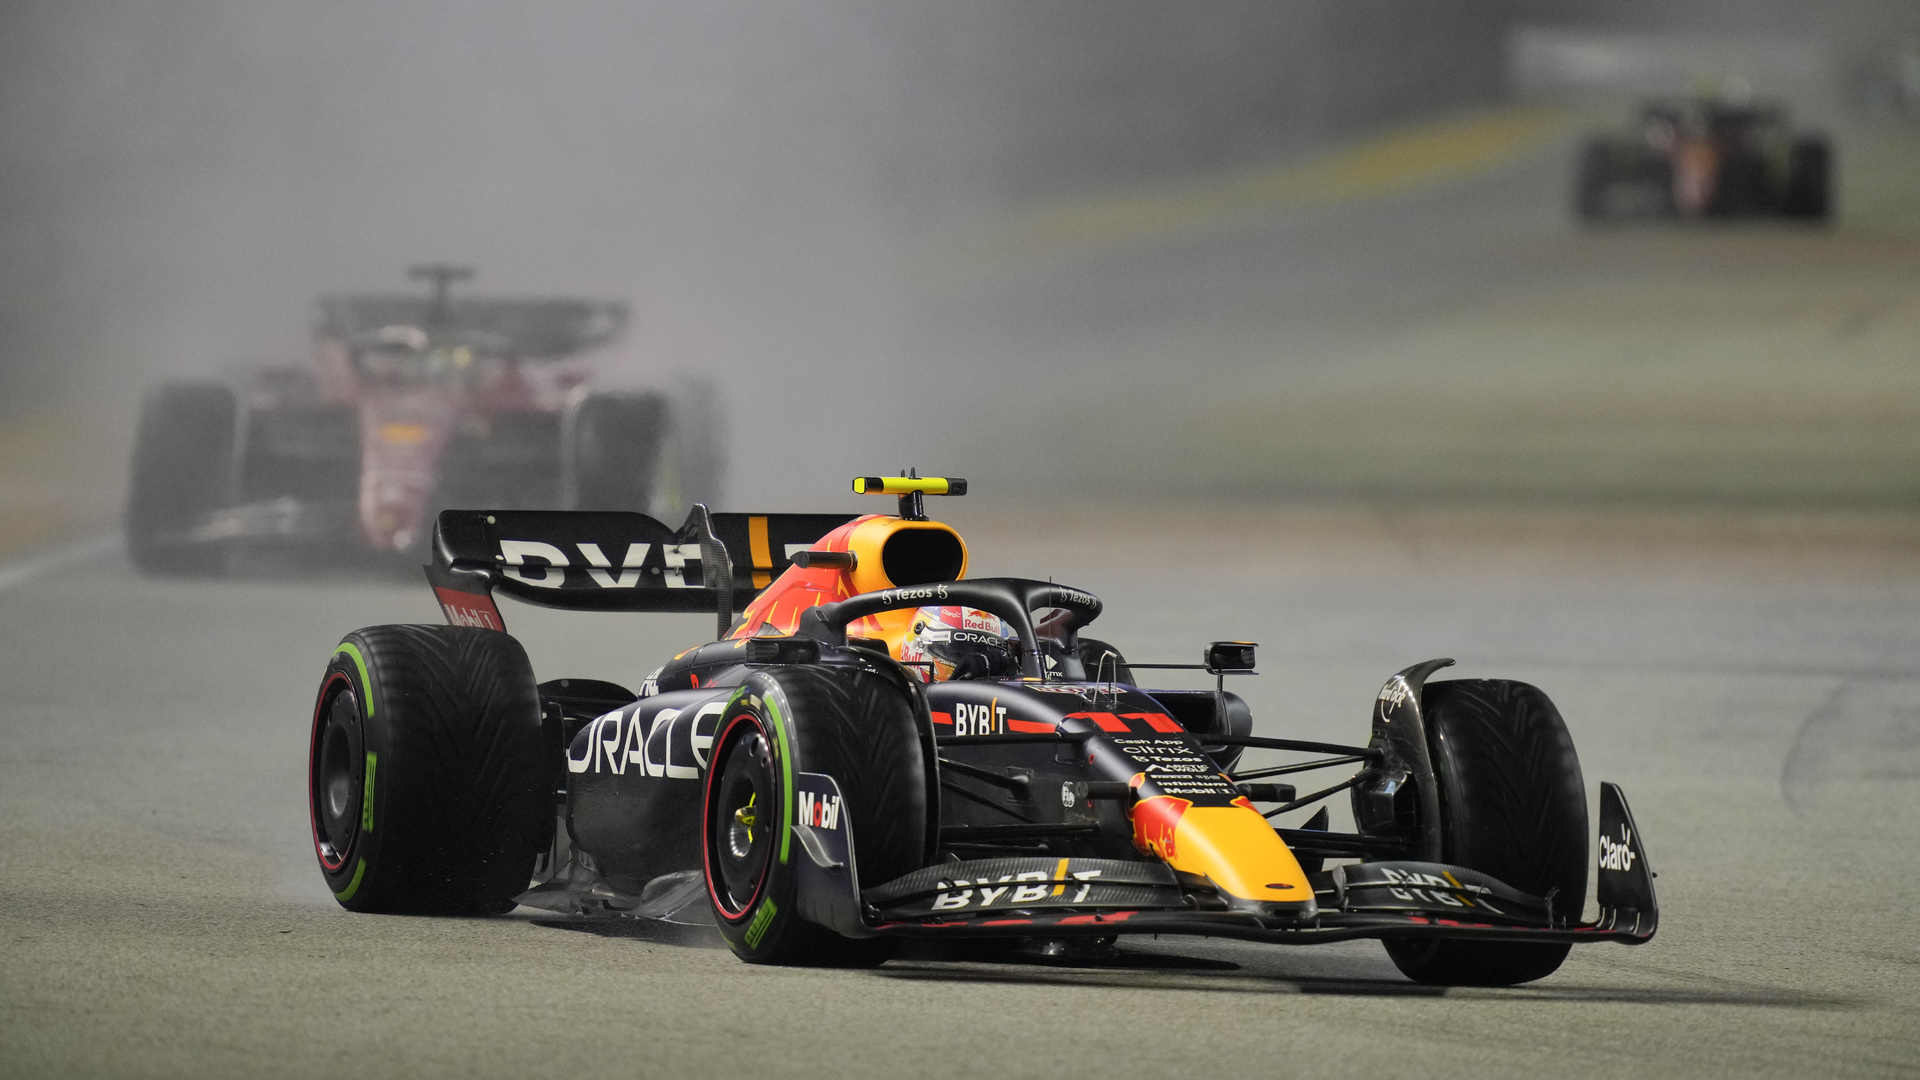 ¡Vuelve al podio! 'Checo' Pérez se lleva el Gran Premio de Singapur